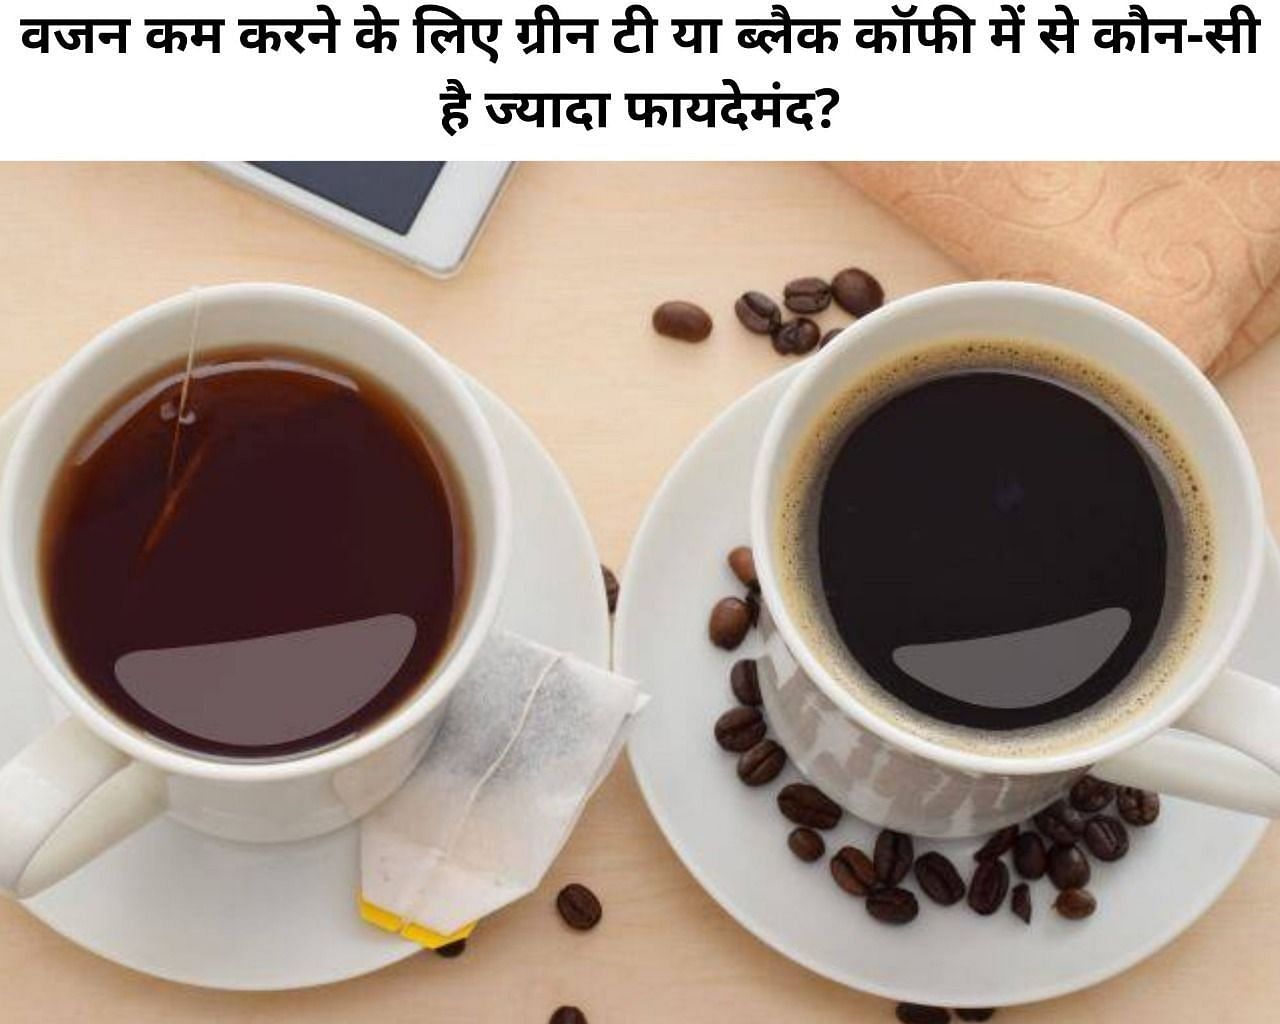 वजन कम करने के लिए ग्रीन टी या ब्लैक कॉफी में से कौन-सी है ज्यादा फायदेमंद? (फोटो - sportskeeda hindi)